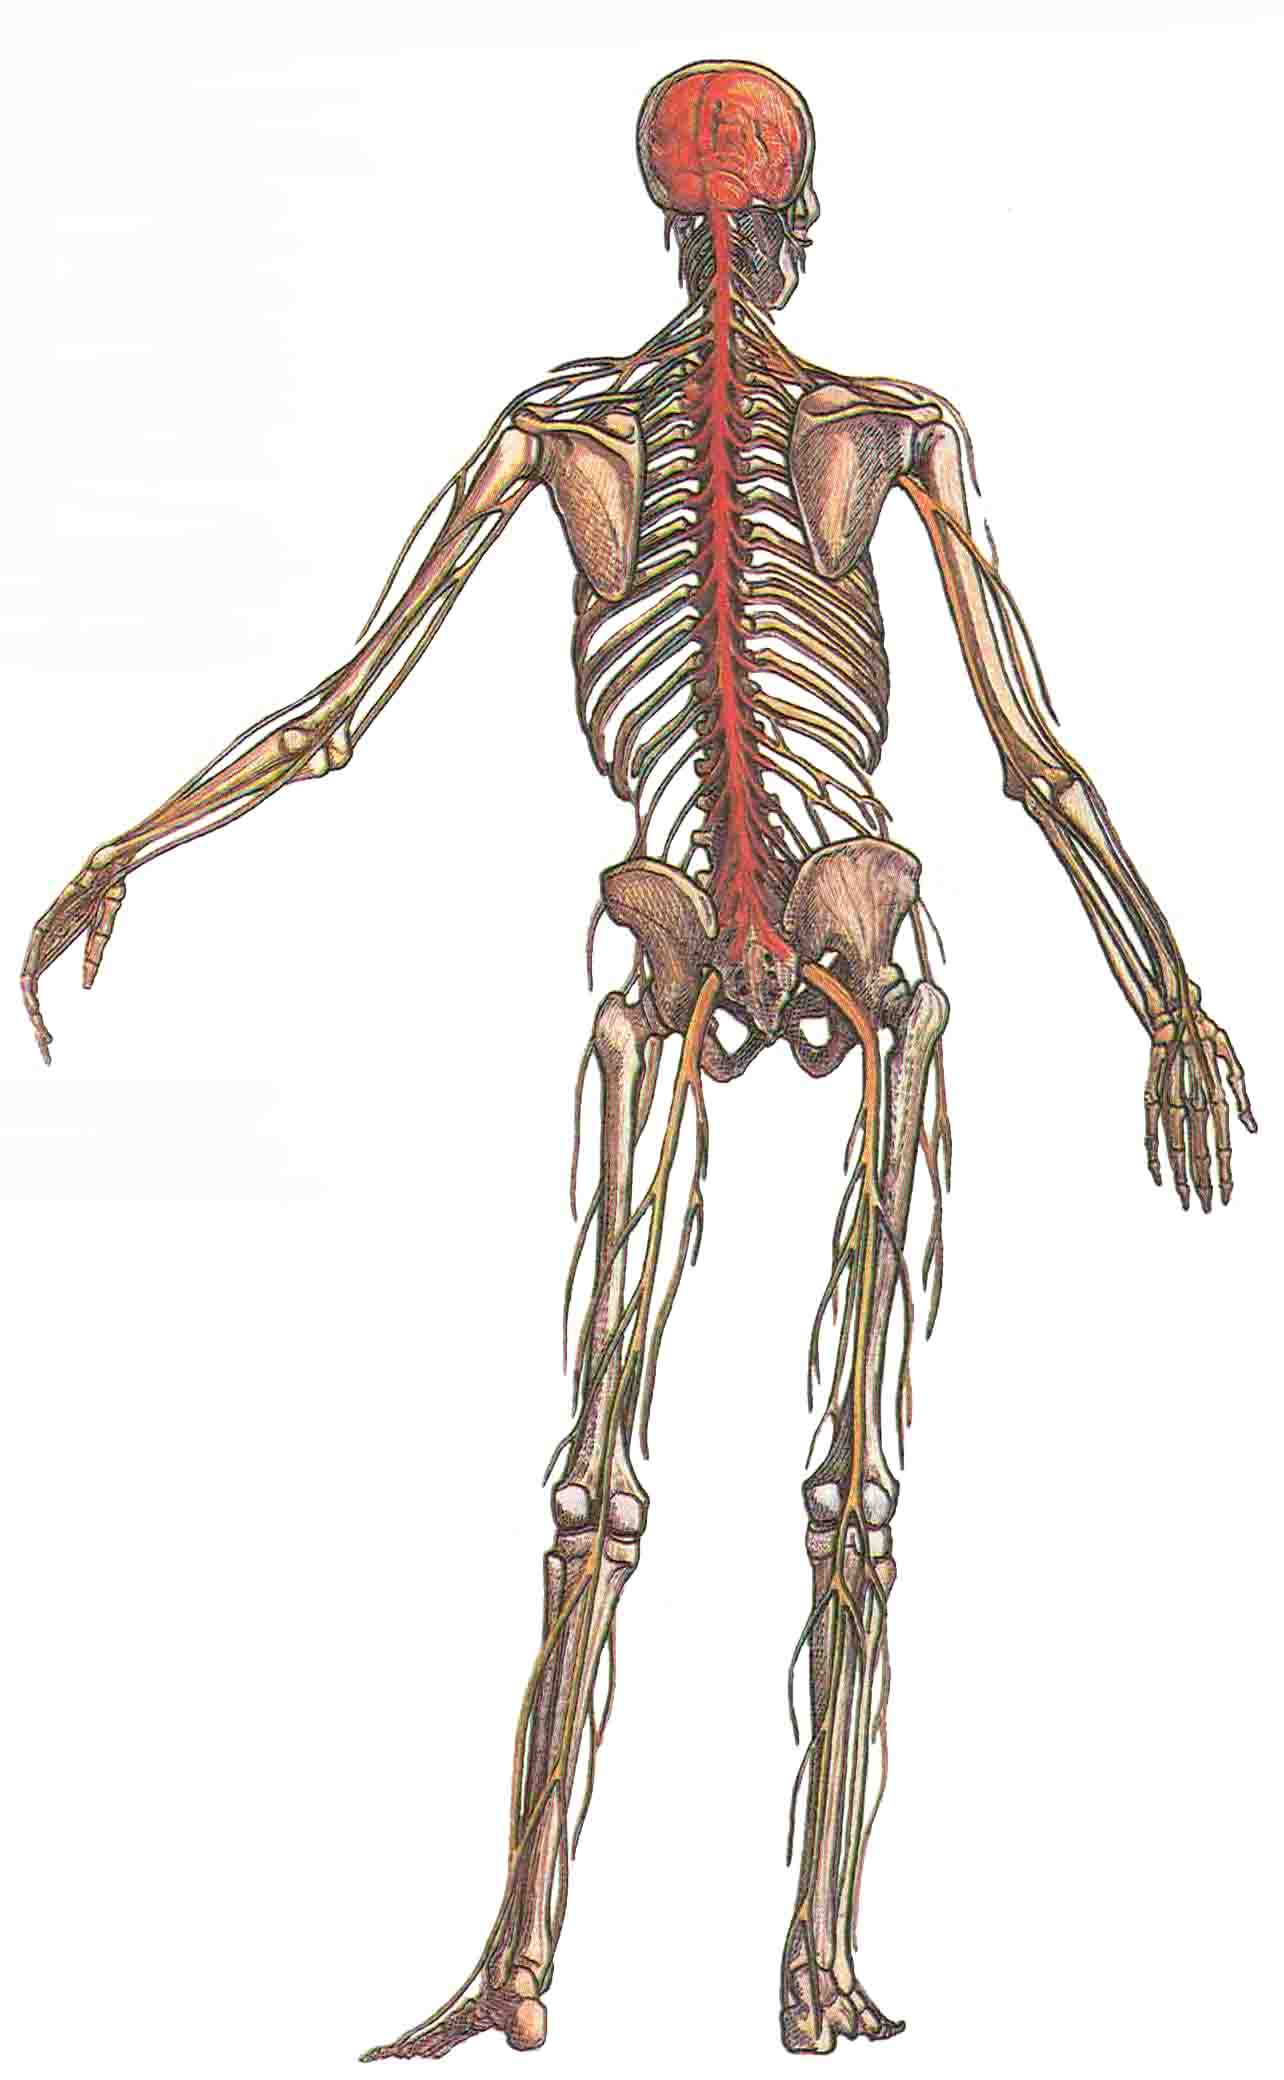 Периферические нервы направляются из этих костных вместилищ к мышцам и коже. Другие важные отделы периферической нервной системы - вегетативная система и диффузная нервная система кишечника- здесь не показаны